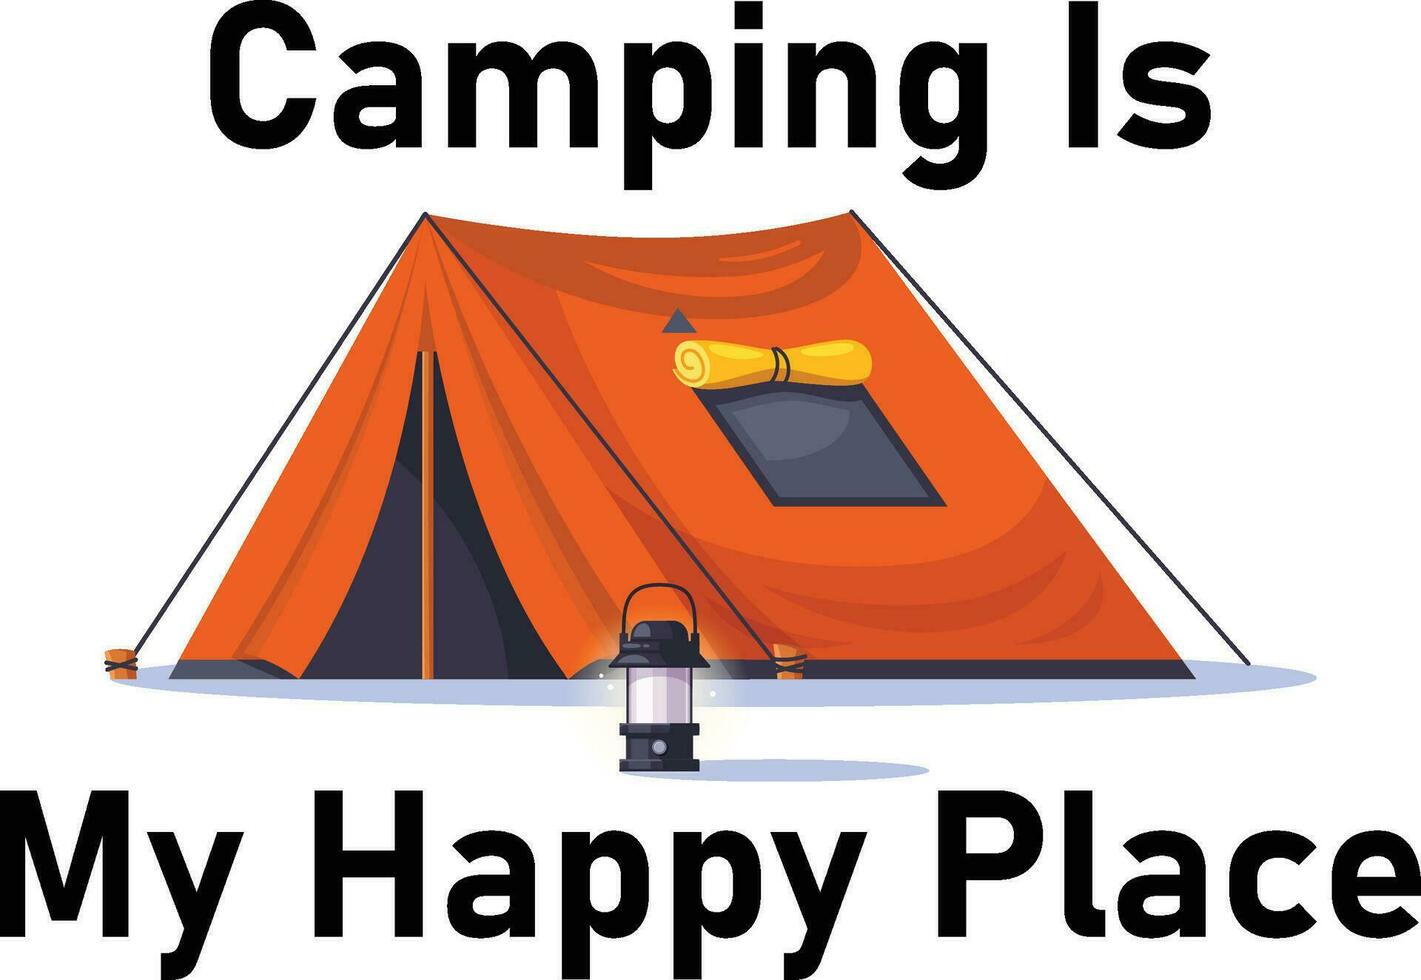 Camping ist mein T-Shirt-Design für glückliche Orte vektor